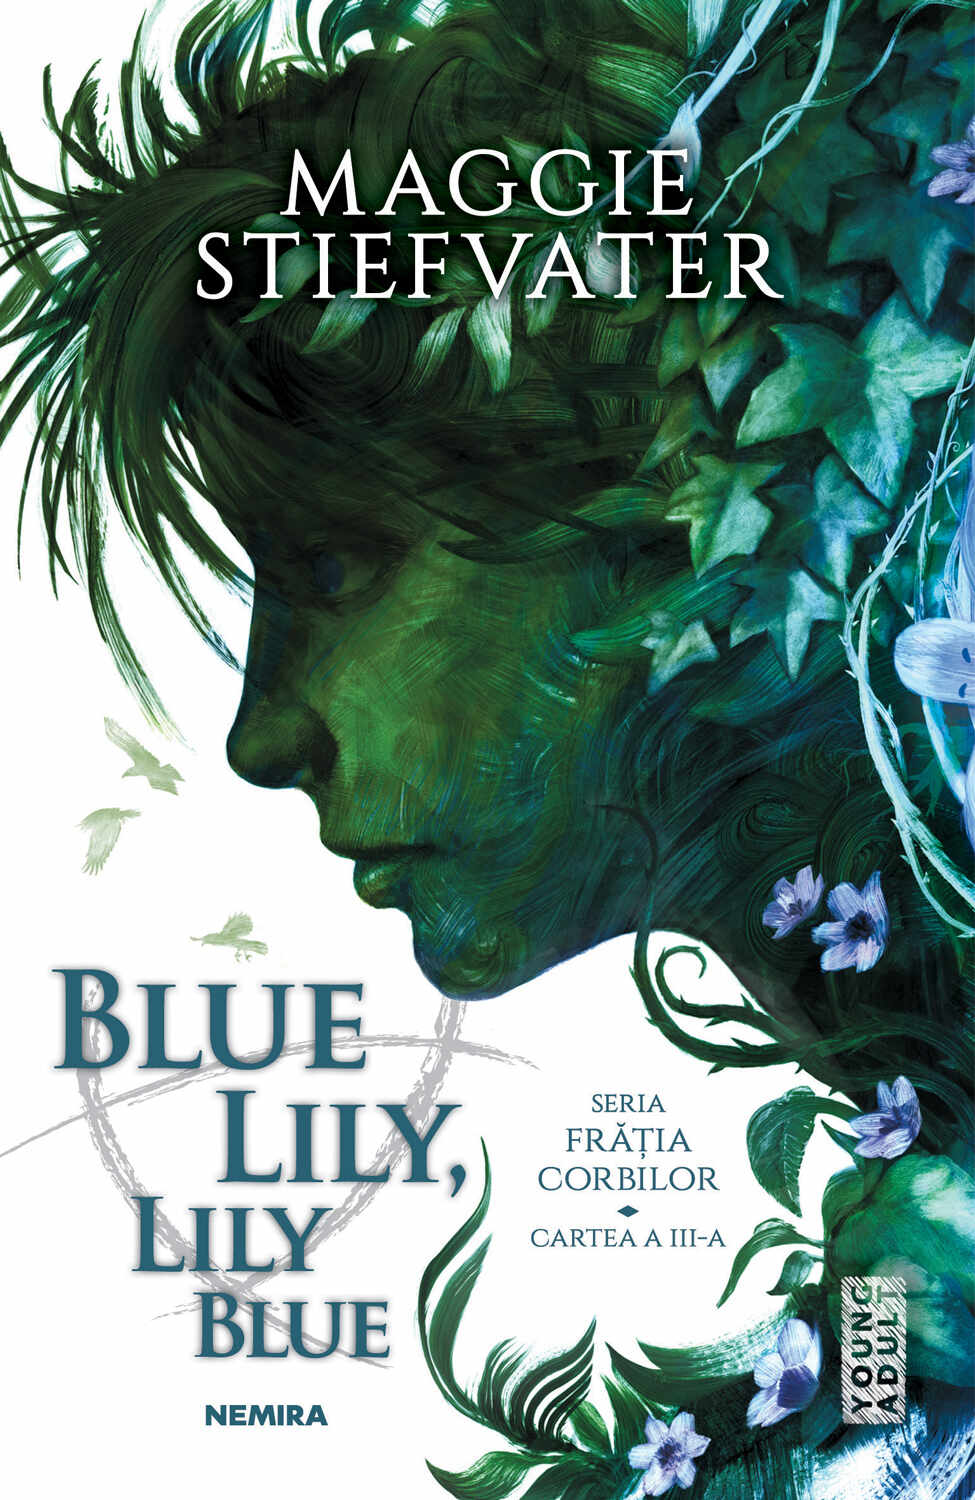 Blue Lily Lily Blue (ebook Seria Frăția Corbilor partea a III-a)